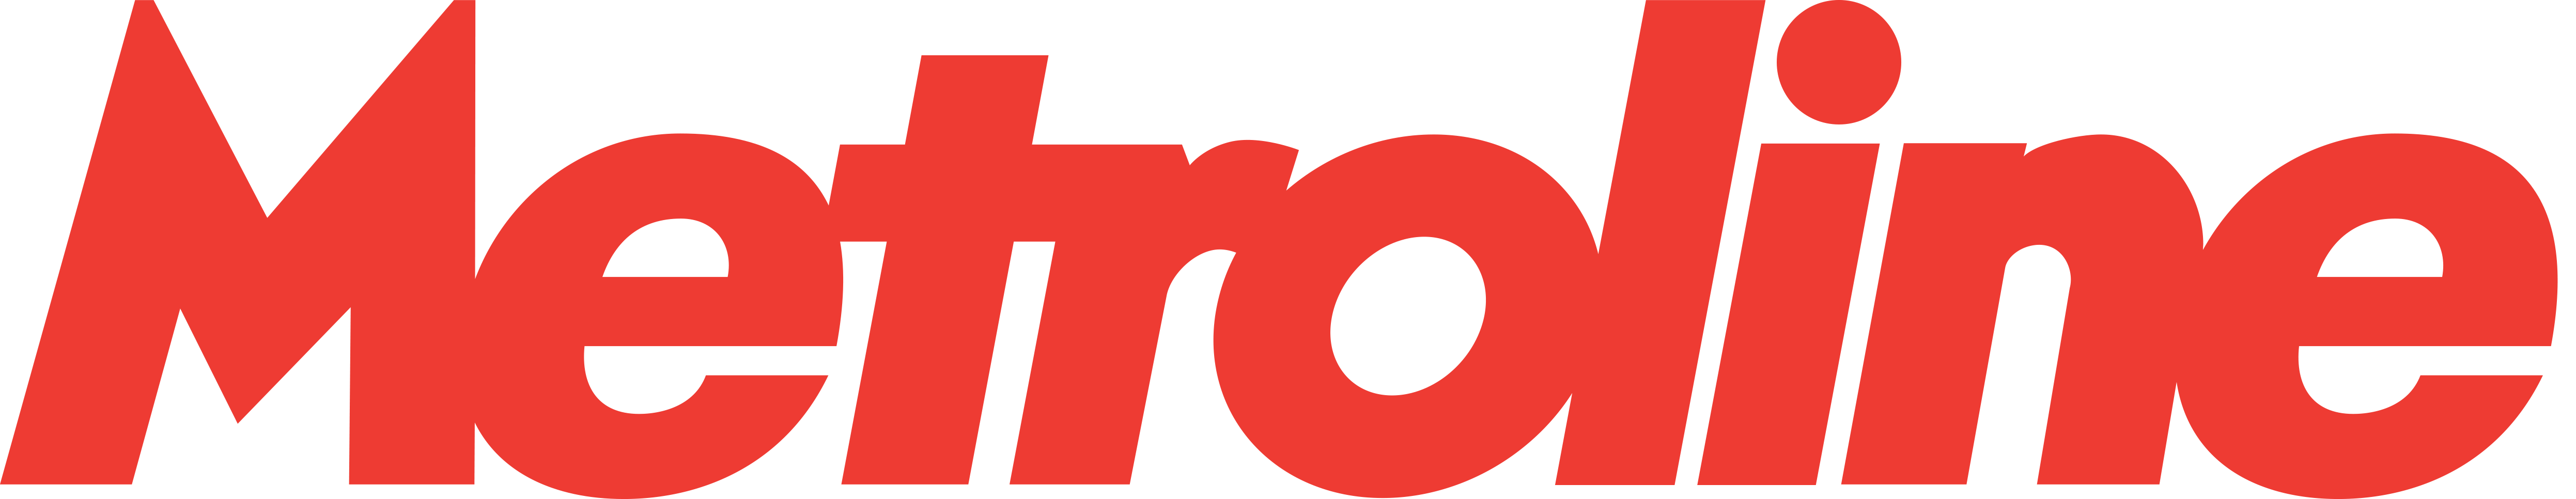 logo for Metroline Limited